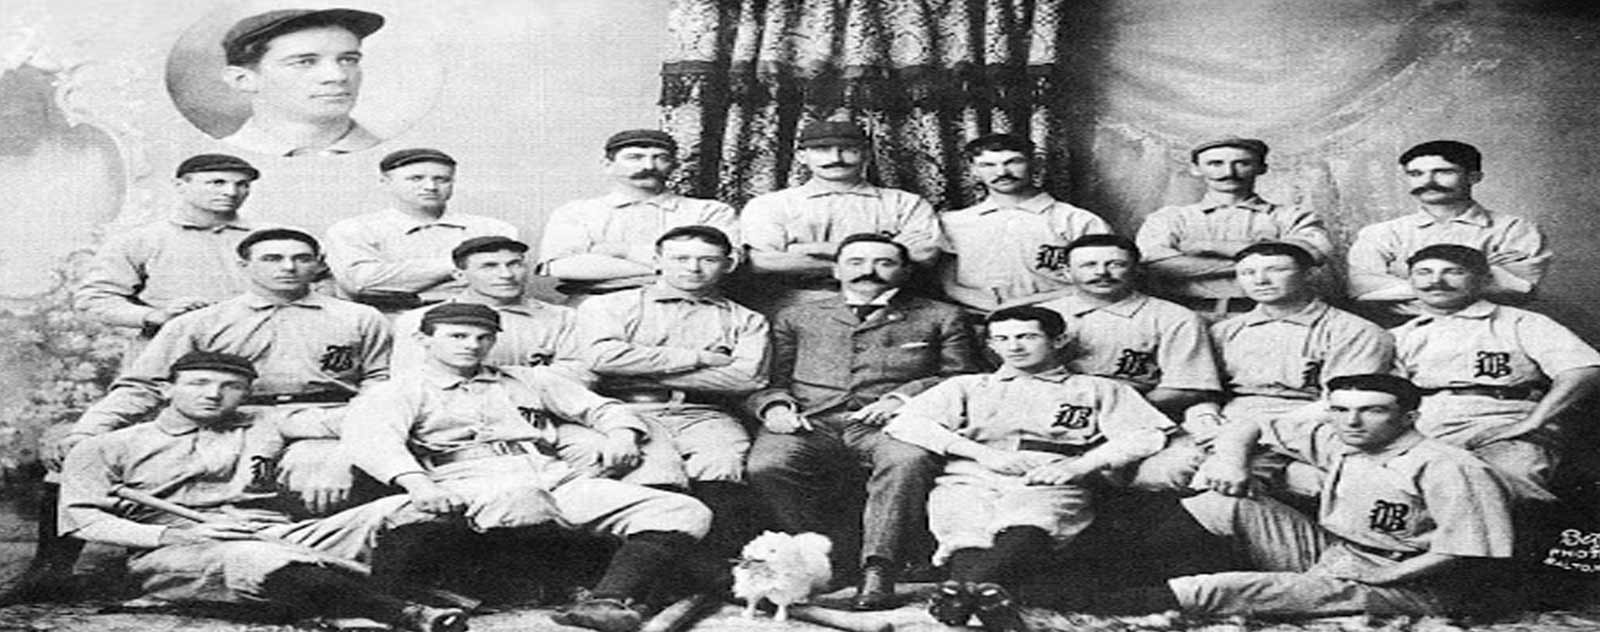 ligue nationale baseball 1900